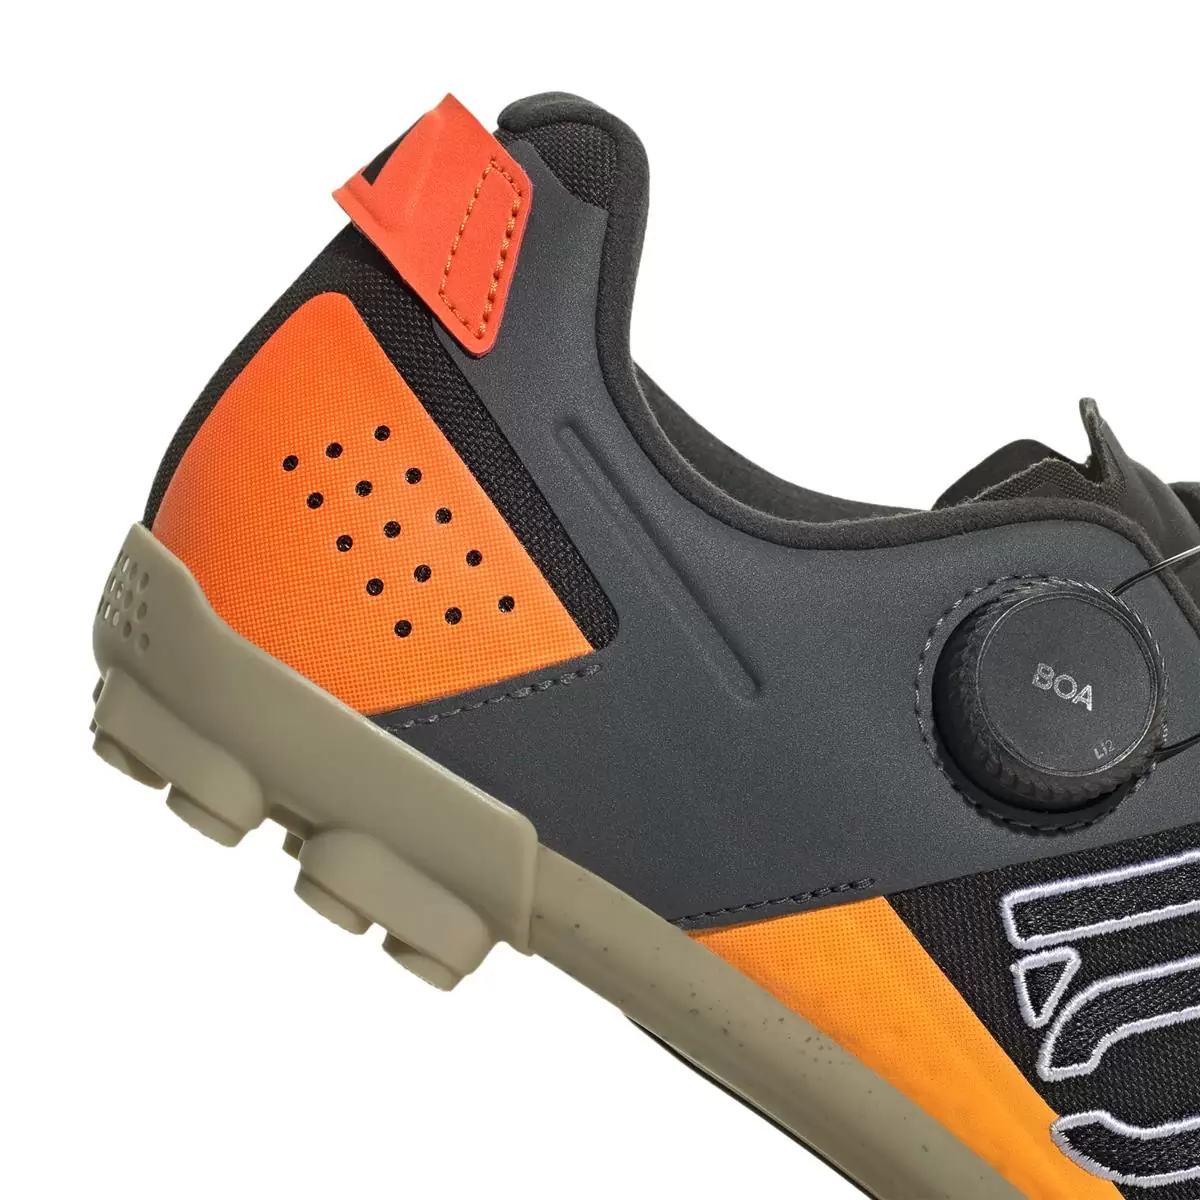 Clip 5.10 Kestrel Boa MTB Shoes Black/Orange Size 42.5 #7